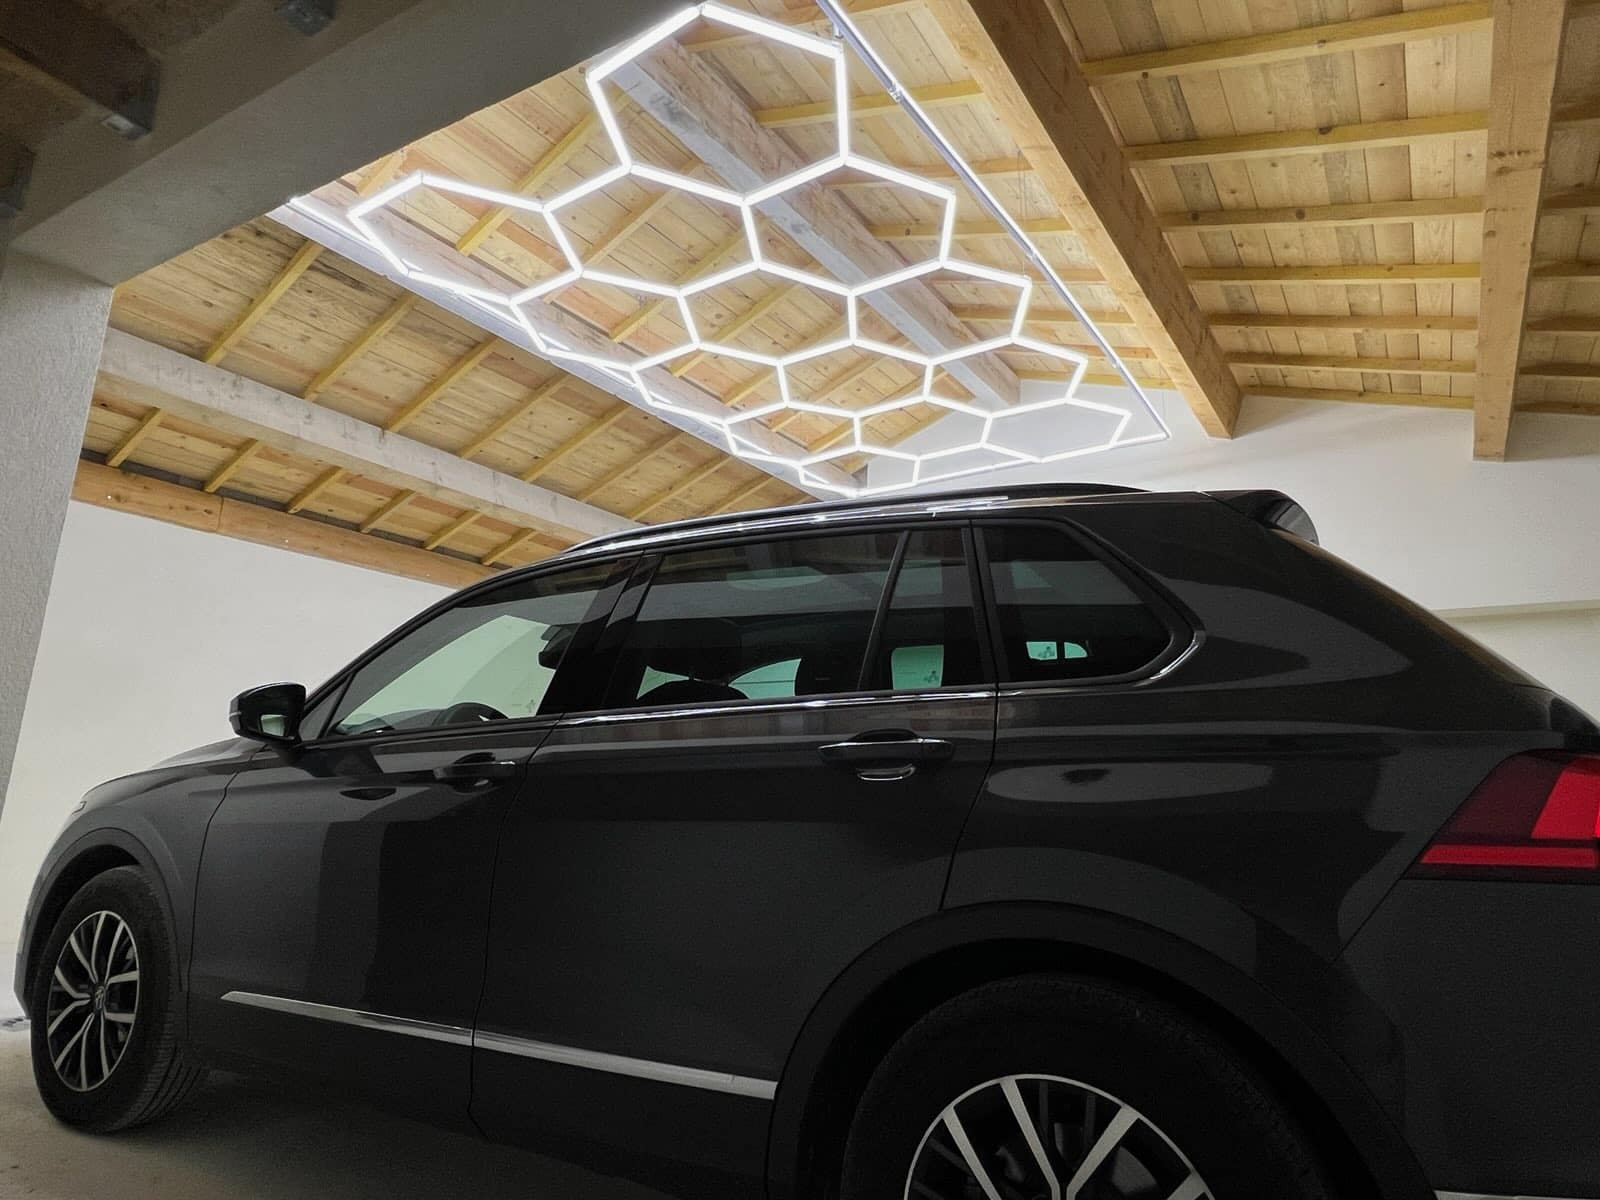 2023 Vente Chaude Nid D'abeille Voiture Detailing Plafonnier Garage  Hexagone Led Lumière Pour Station De Lavage Garage Plafond